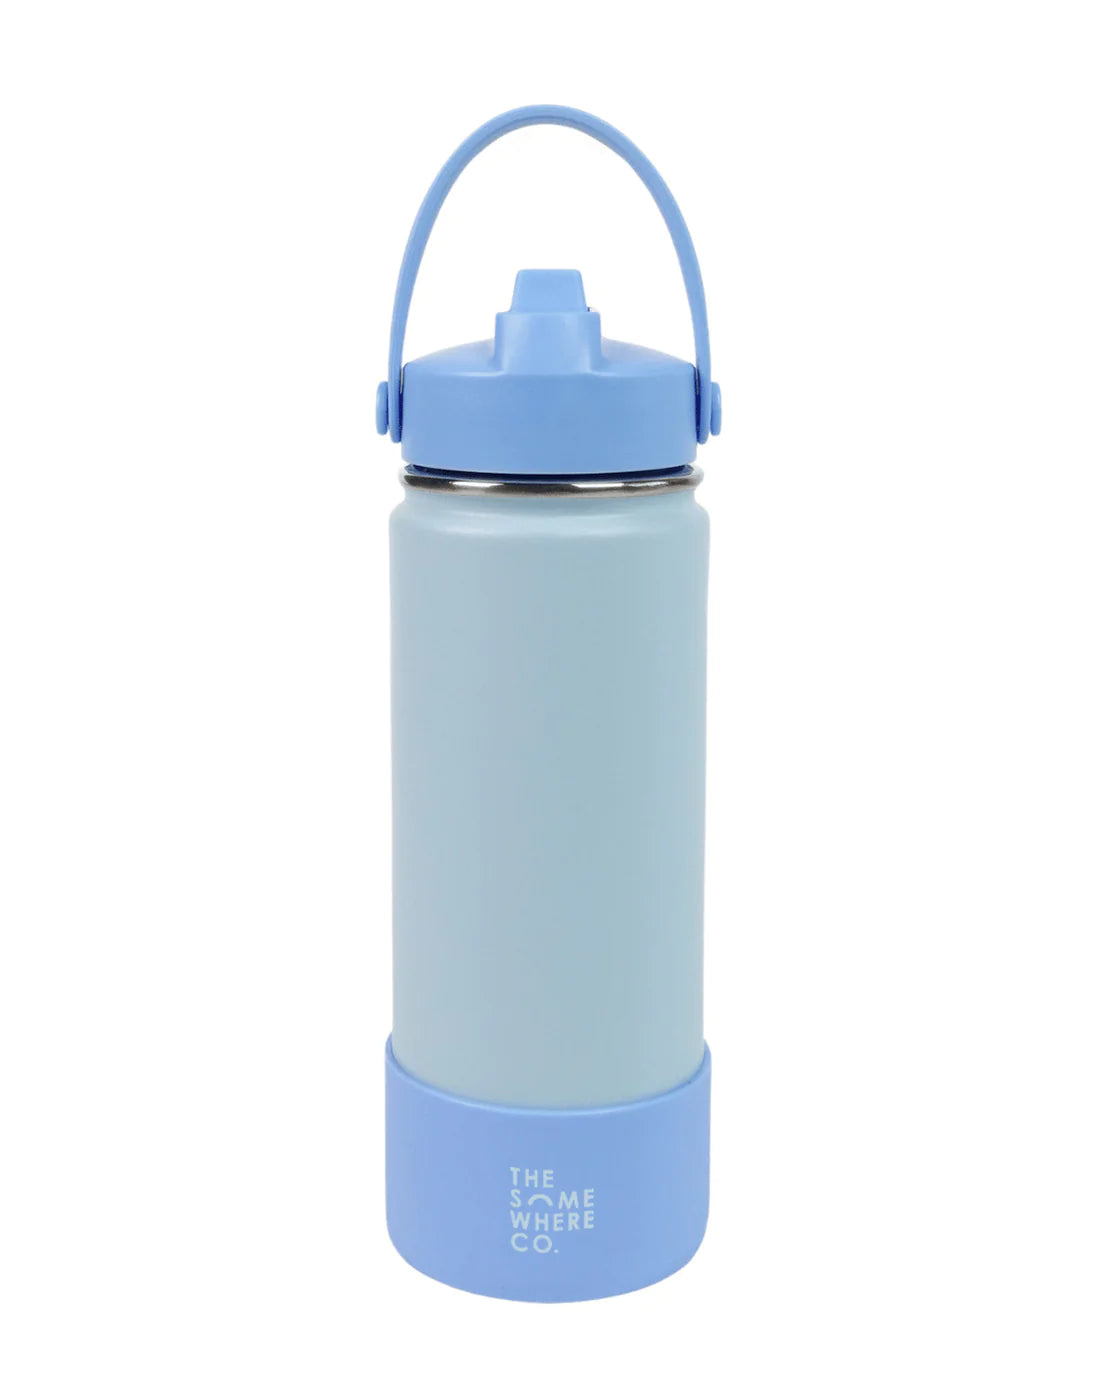 SKY water bottle in stainless steel